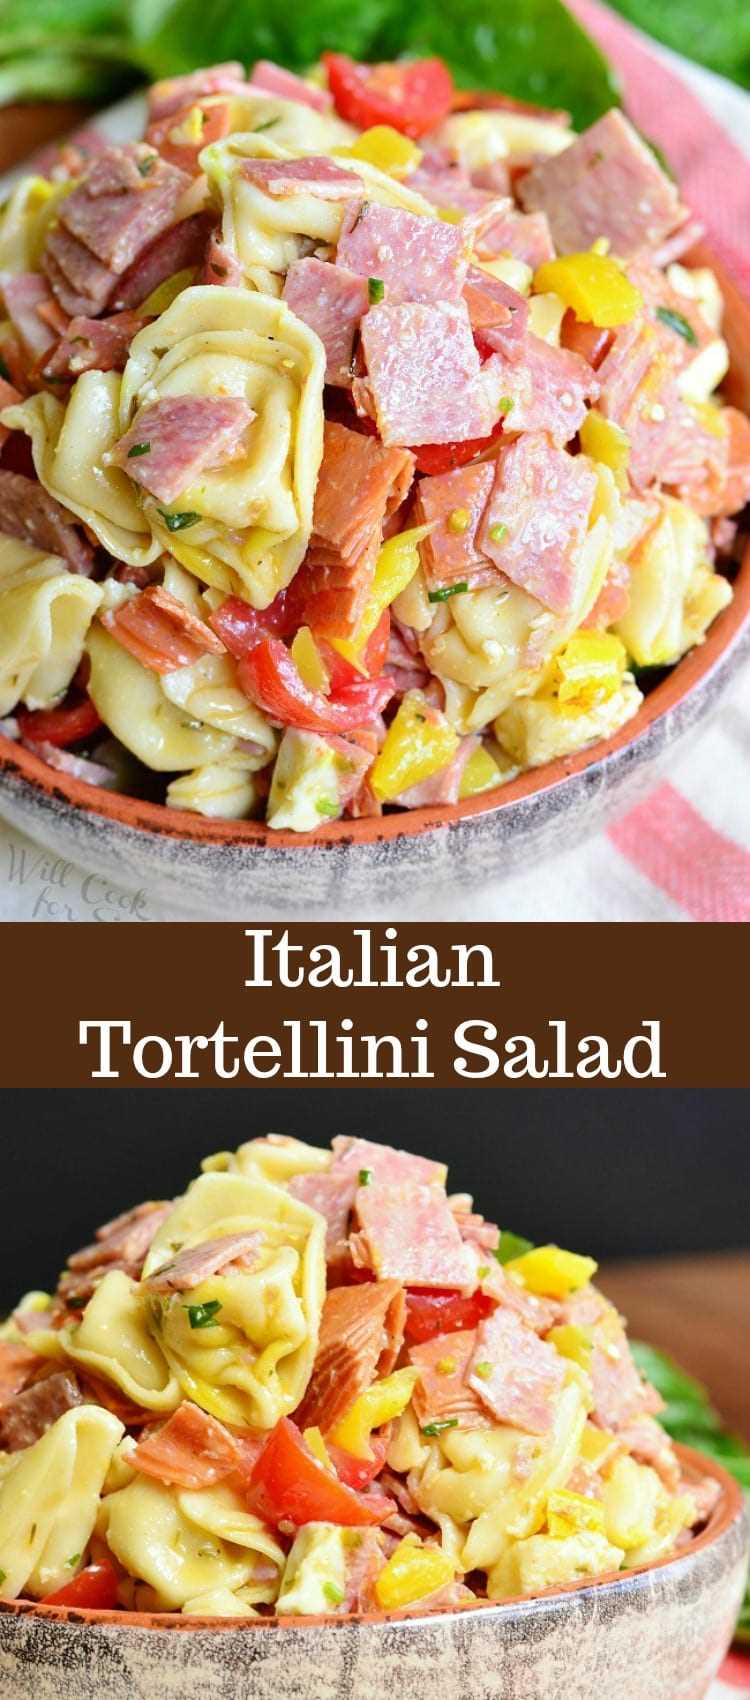 Receta de ensalada italiana de tortellini